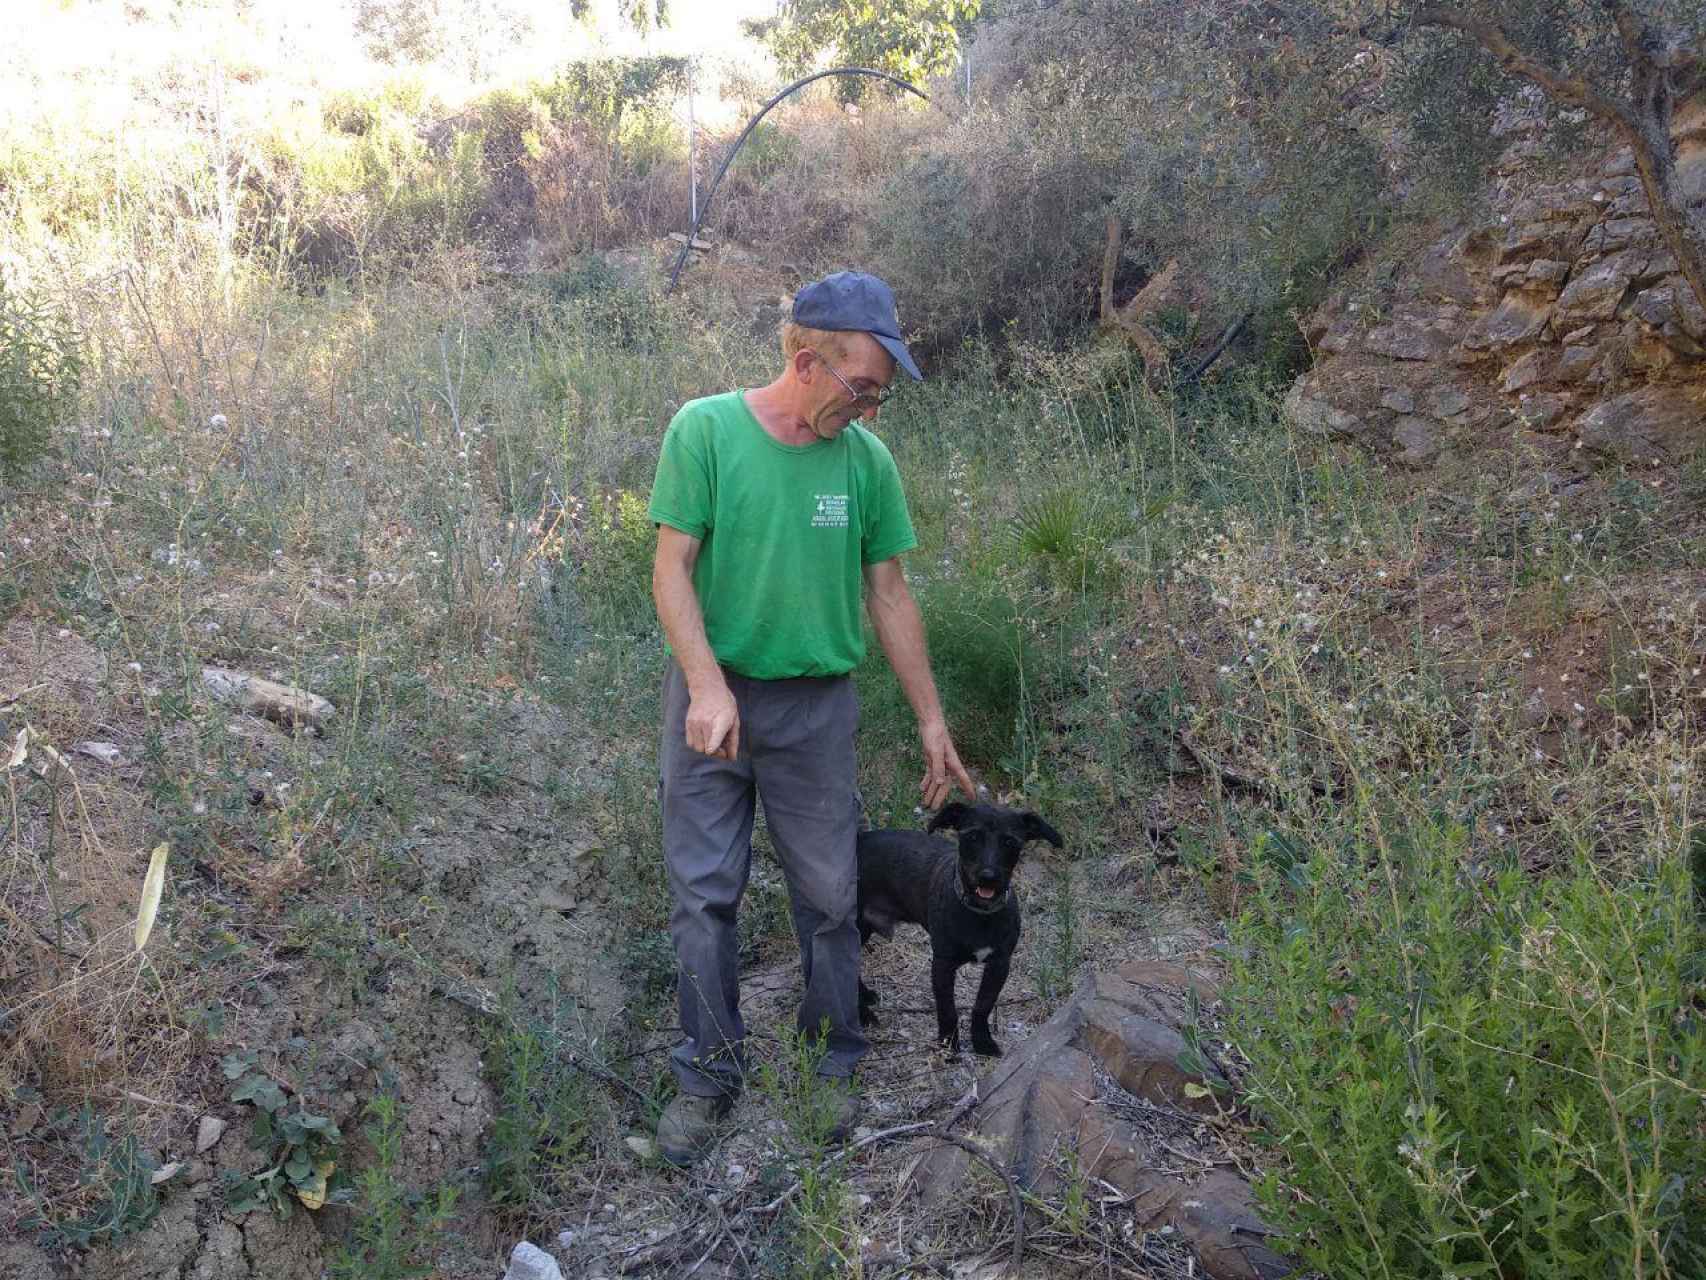 Pedro, el dueño de la finca, señala el lugar exacto en el que se encontró el cadáver: la piedra en la que se asienta, en ese momento, su perro. FOTO: BORJA DÍEZ